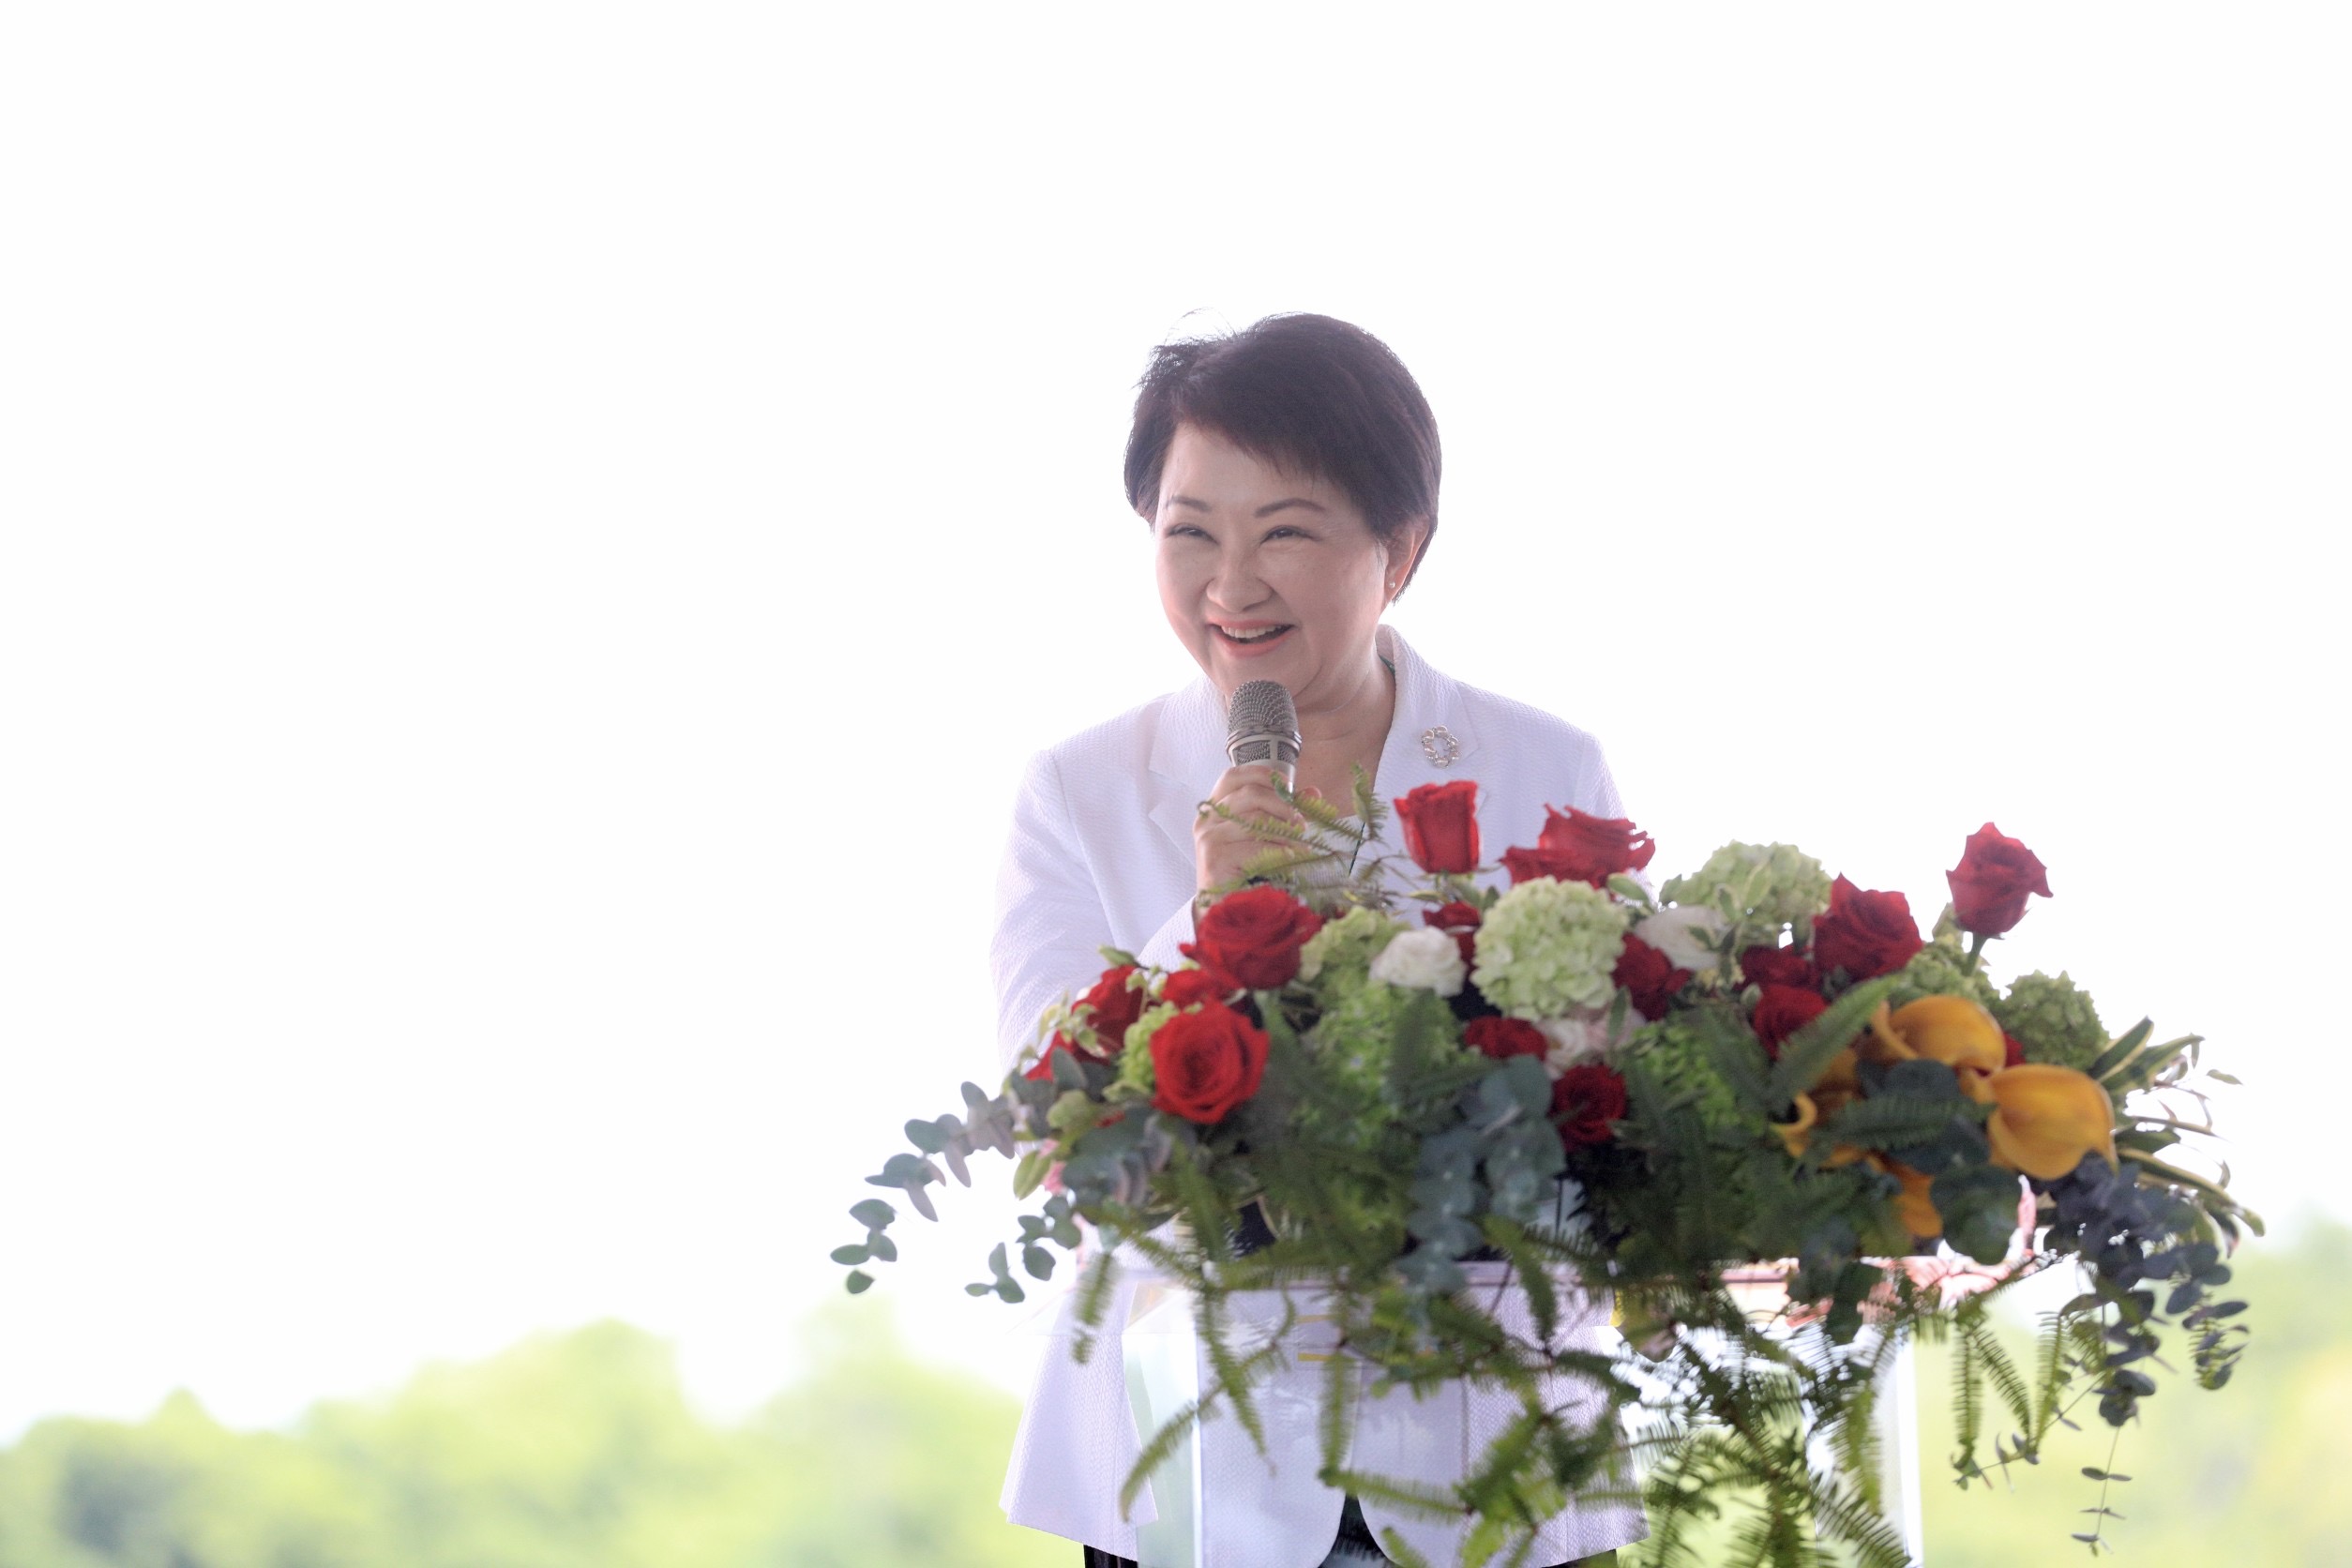 台中市长卢秀燕向议会请假，将参加520正副总统就职典礼。联合报系资料照片